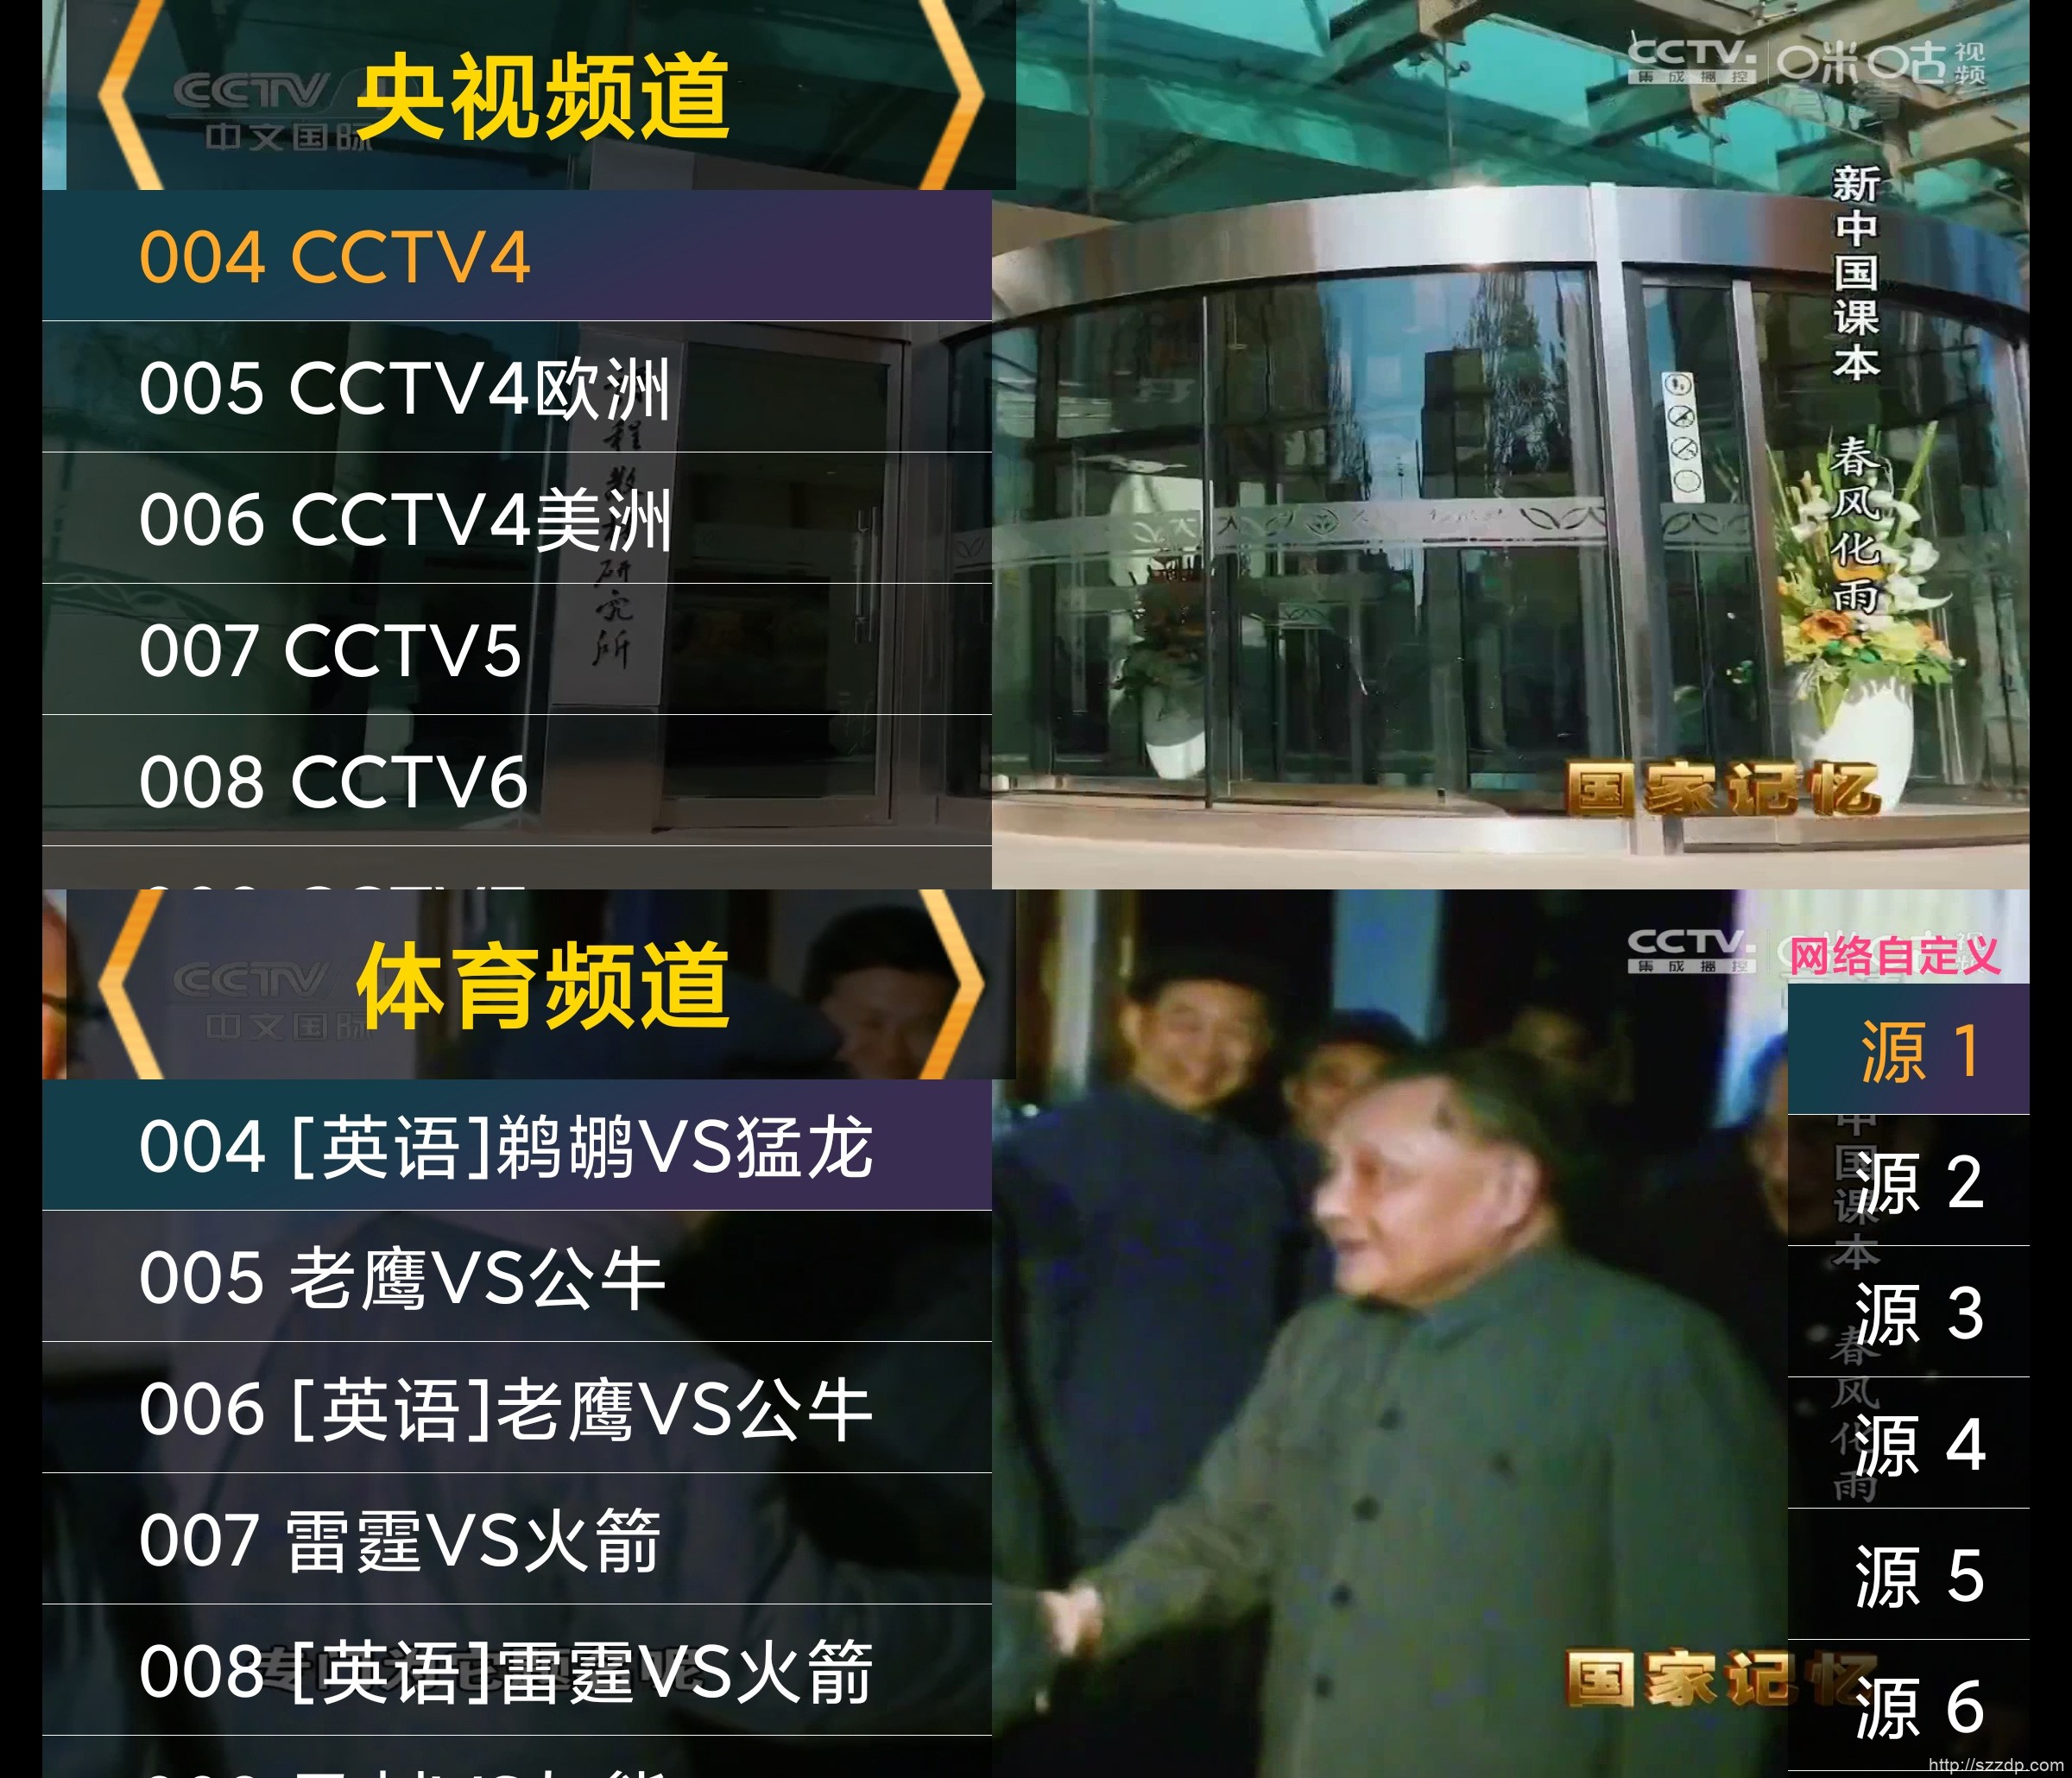 星火电视直播 v2.0.1.7 中文免费TV版 内置海外频道